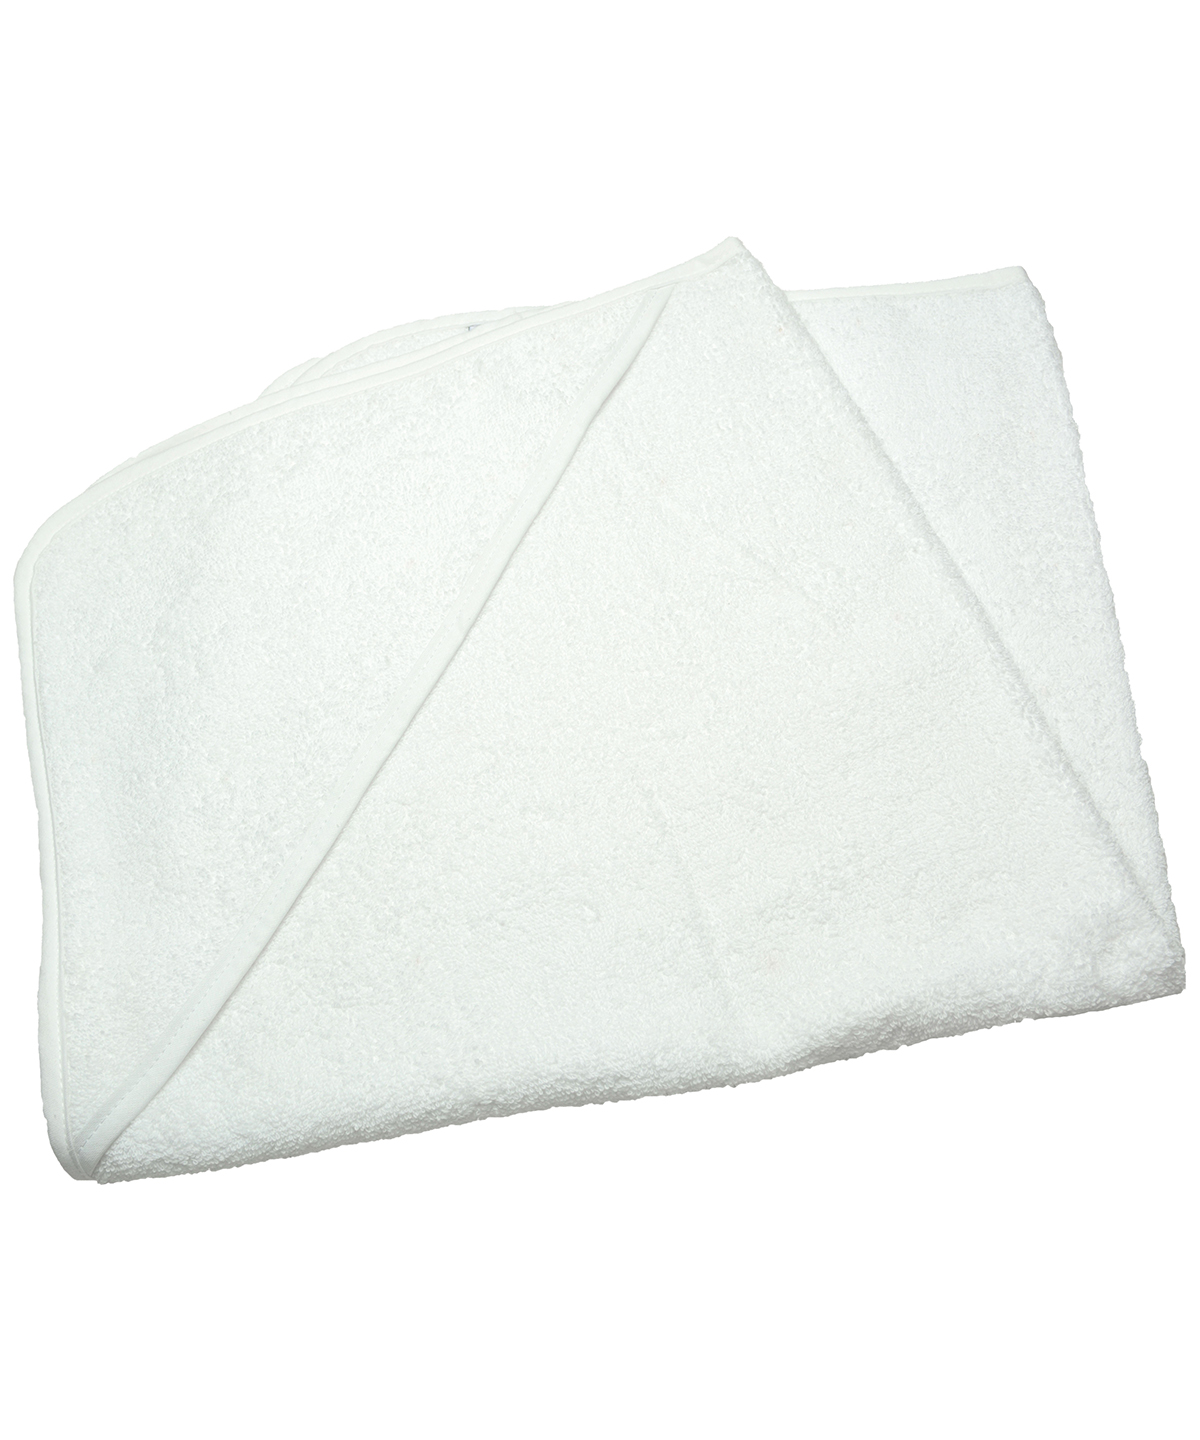 Babiezz® Medium Baby Hooded Towel White/White/White Size One Size